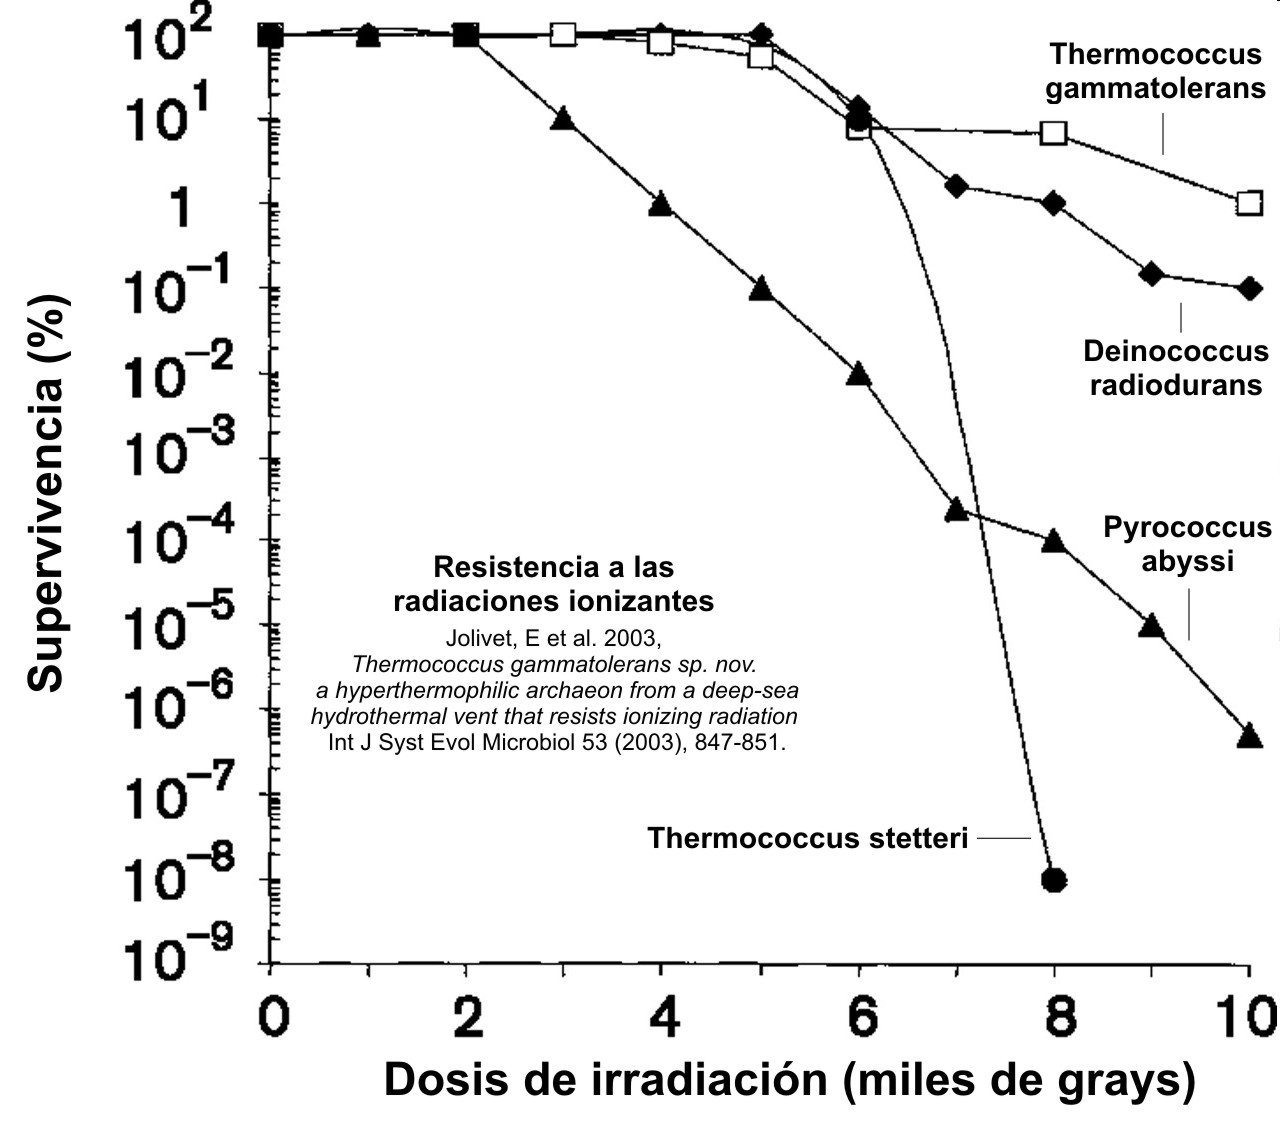 Resistencia a la radiación de diversos microorganismos seleccionados, incluyendo Thermococcus gammatolerans y Deinococcus radiodurans.